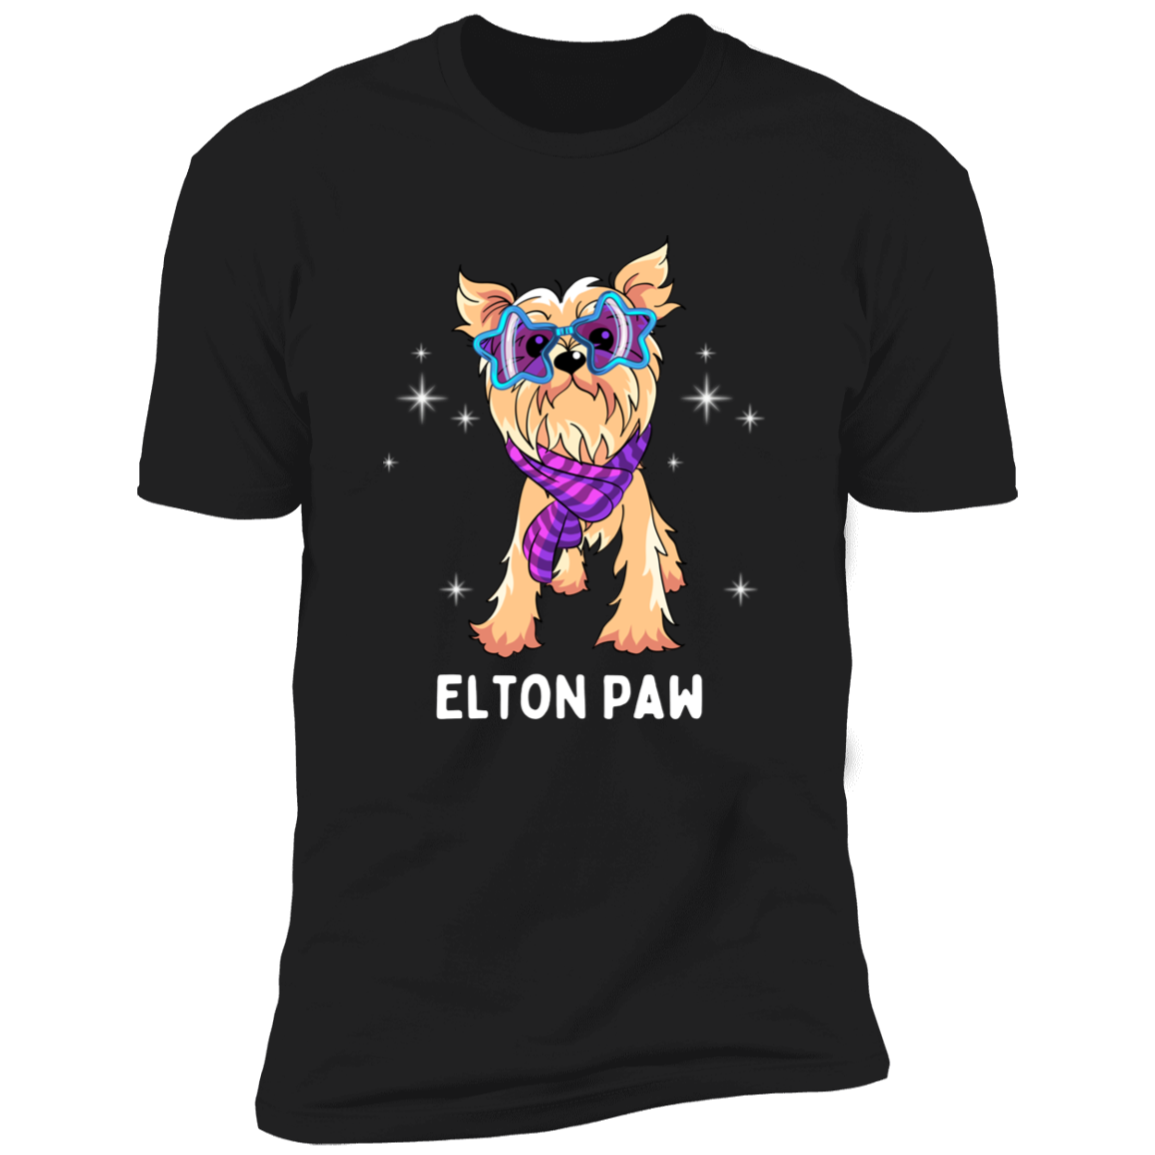 Elton Paw Dog Shirt, Funny dog shirt for humans, Dog mom shirt, dog dad shirt, in black